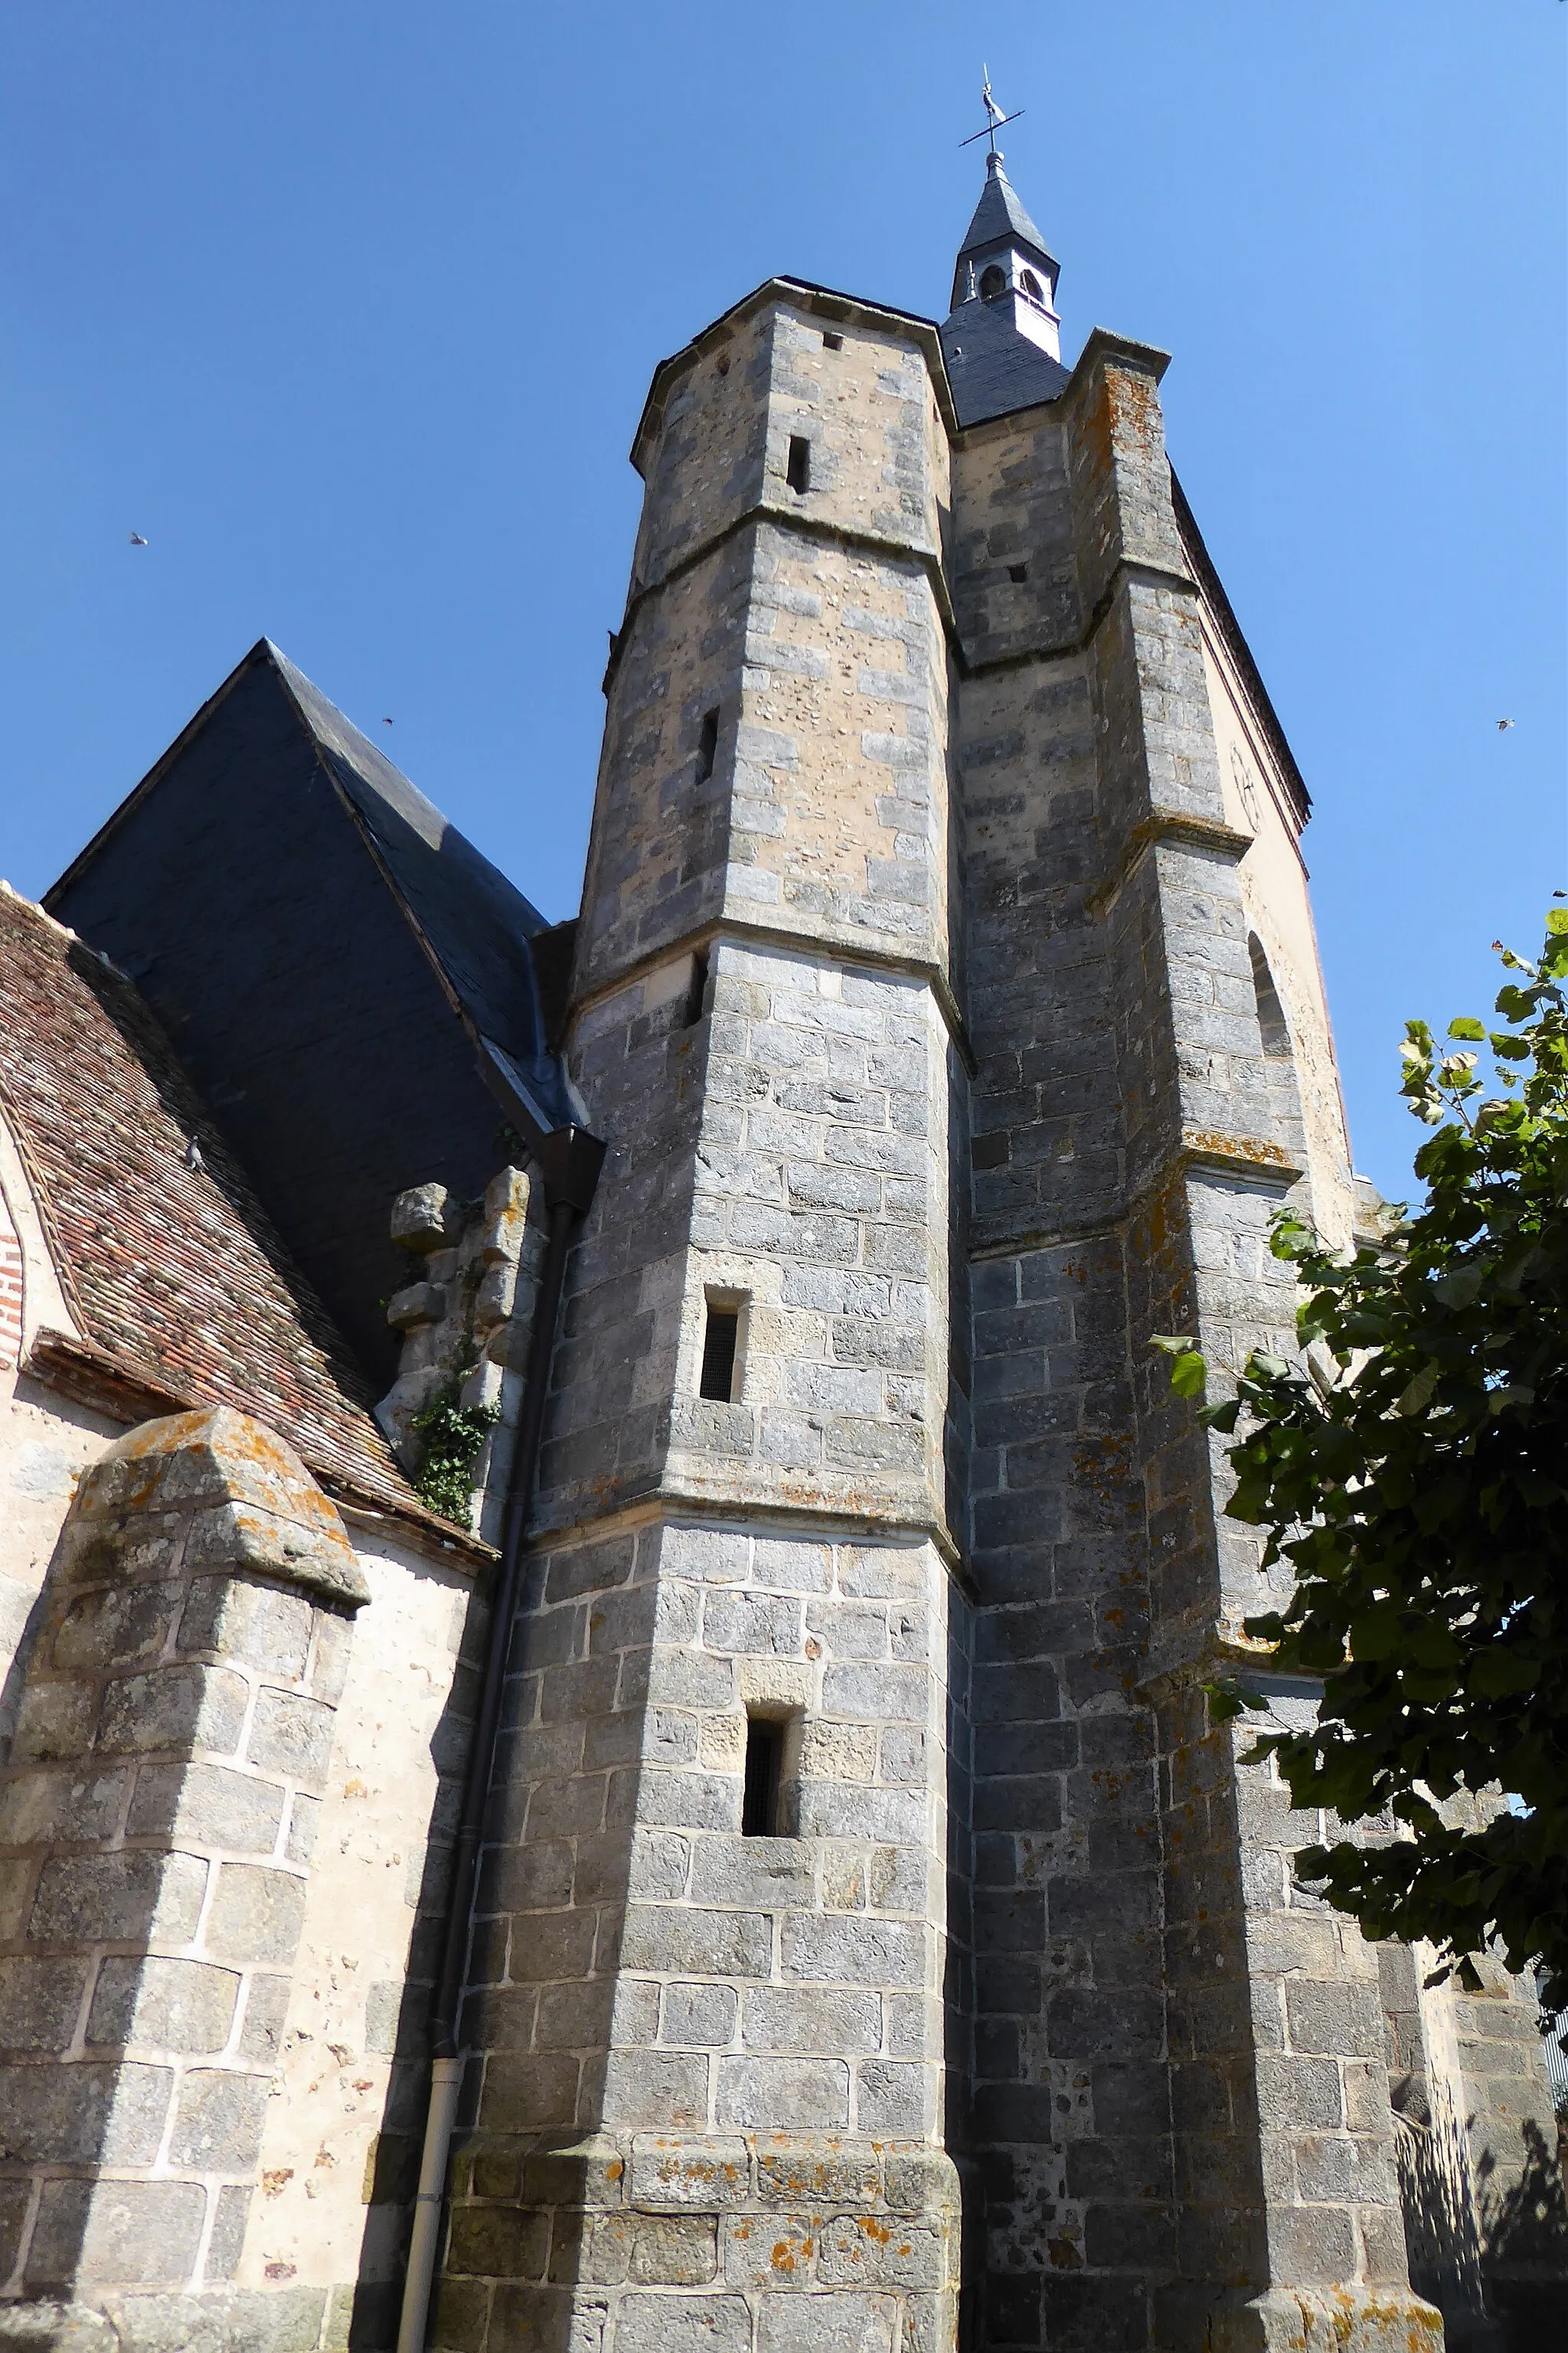 Photo showing: tour-clocher avec sa tourelle d'accès et son clocheton, église Saint-Rémi du Boullay-Mivoye, Eure-et-Loir, France.